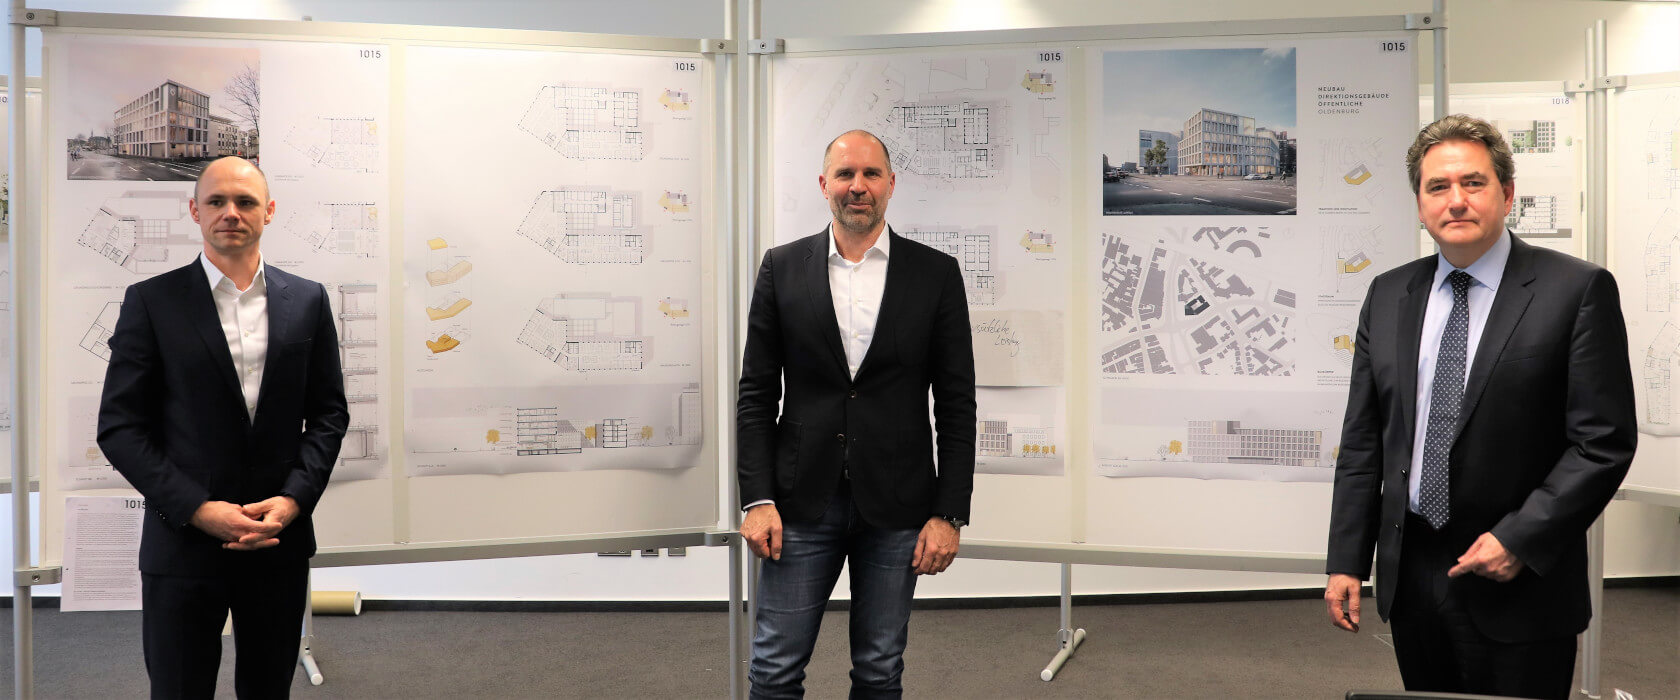 Angelis & Partner gewinnen Architekturwettbewerb zum Neubau der Öffentlichen Oldenburg